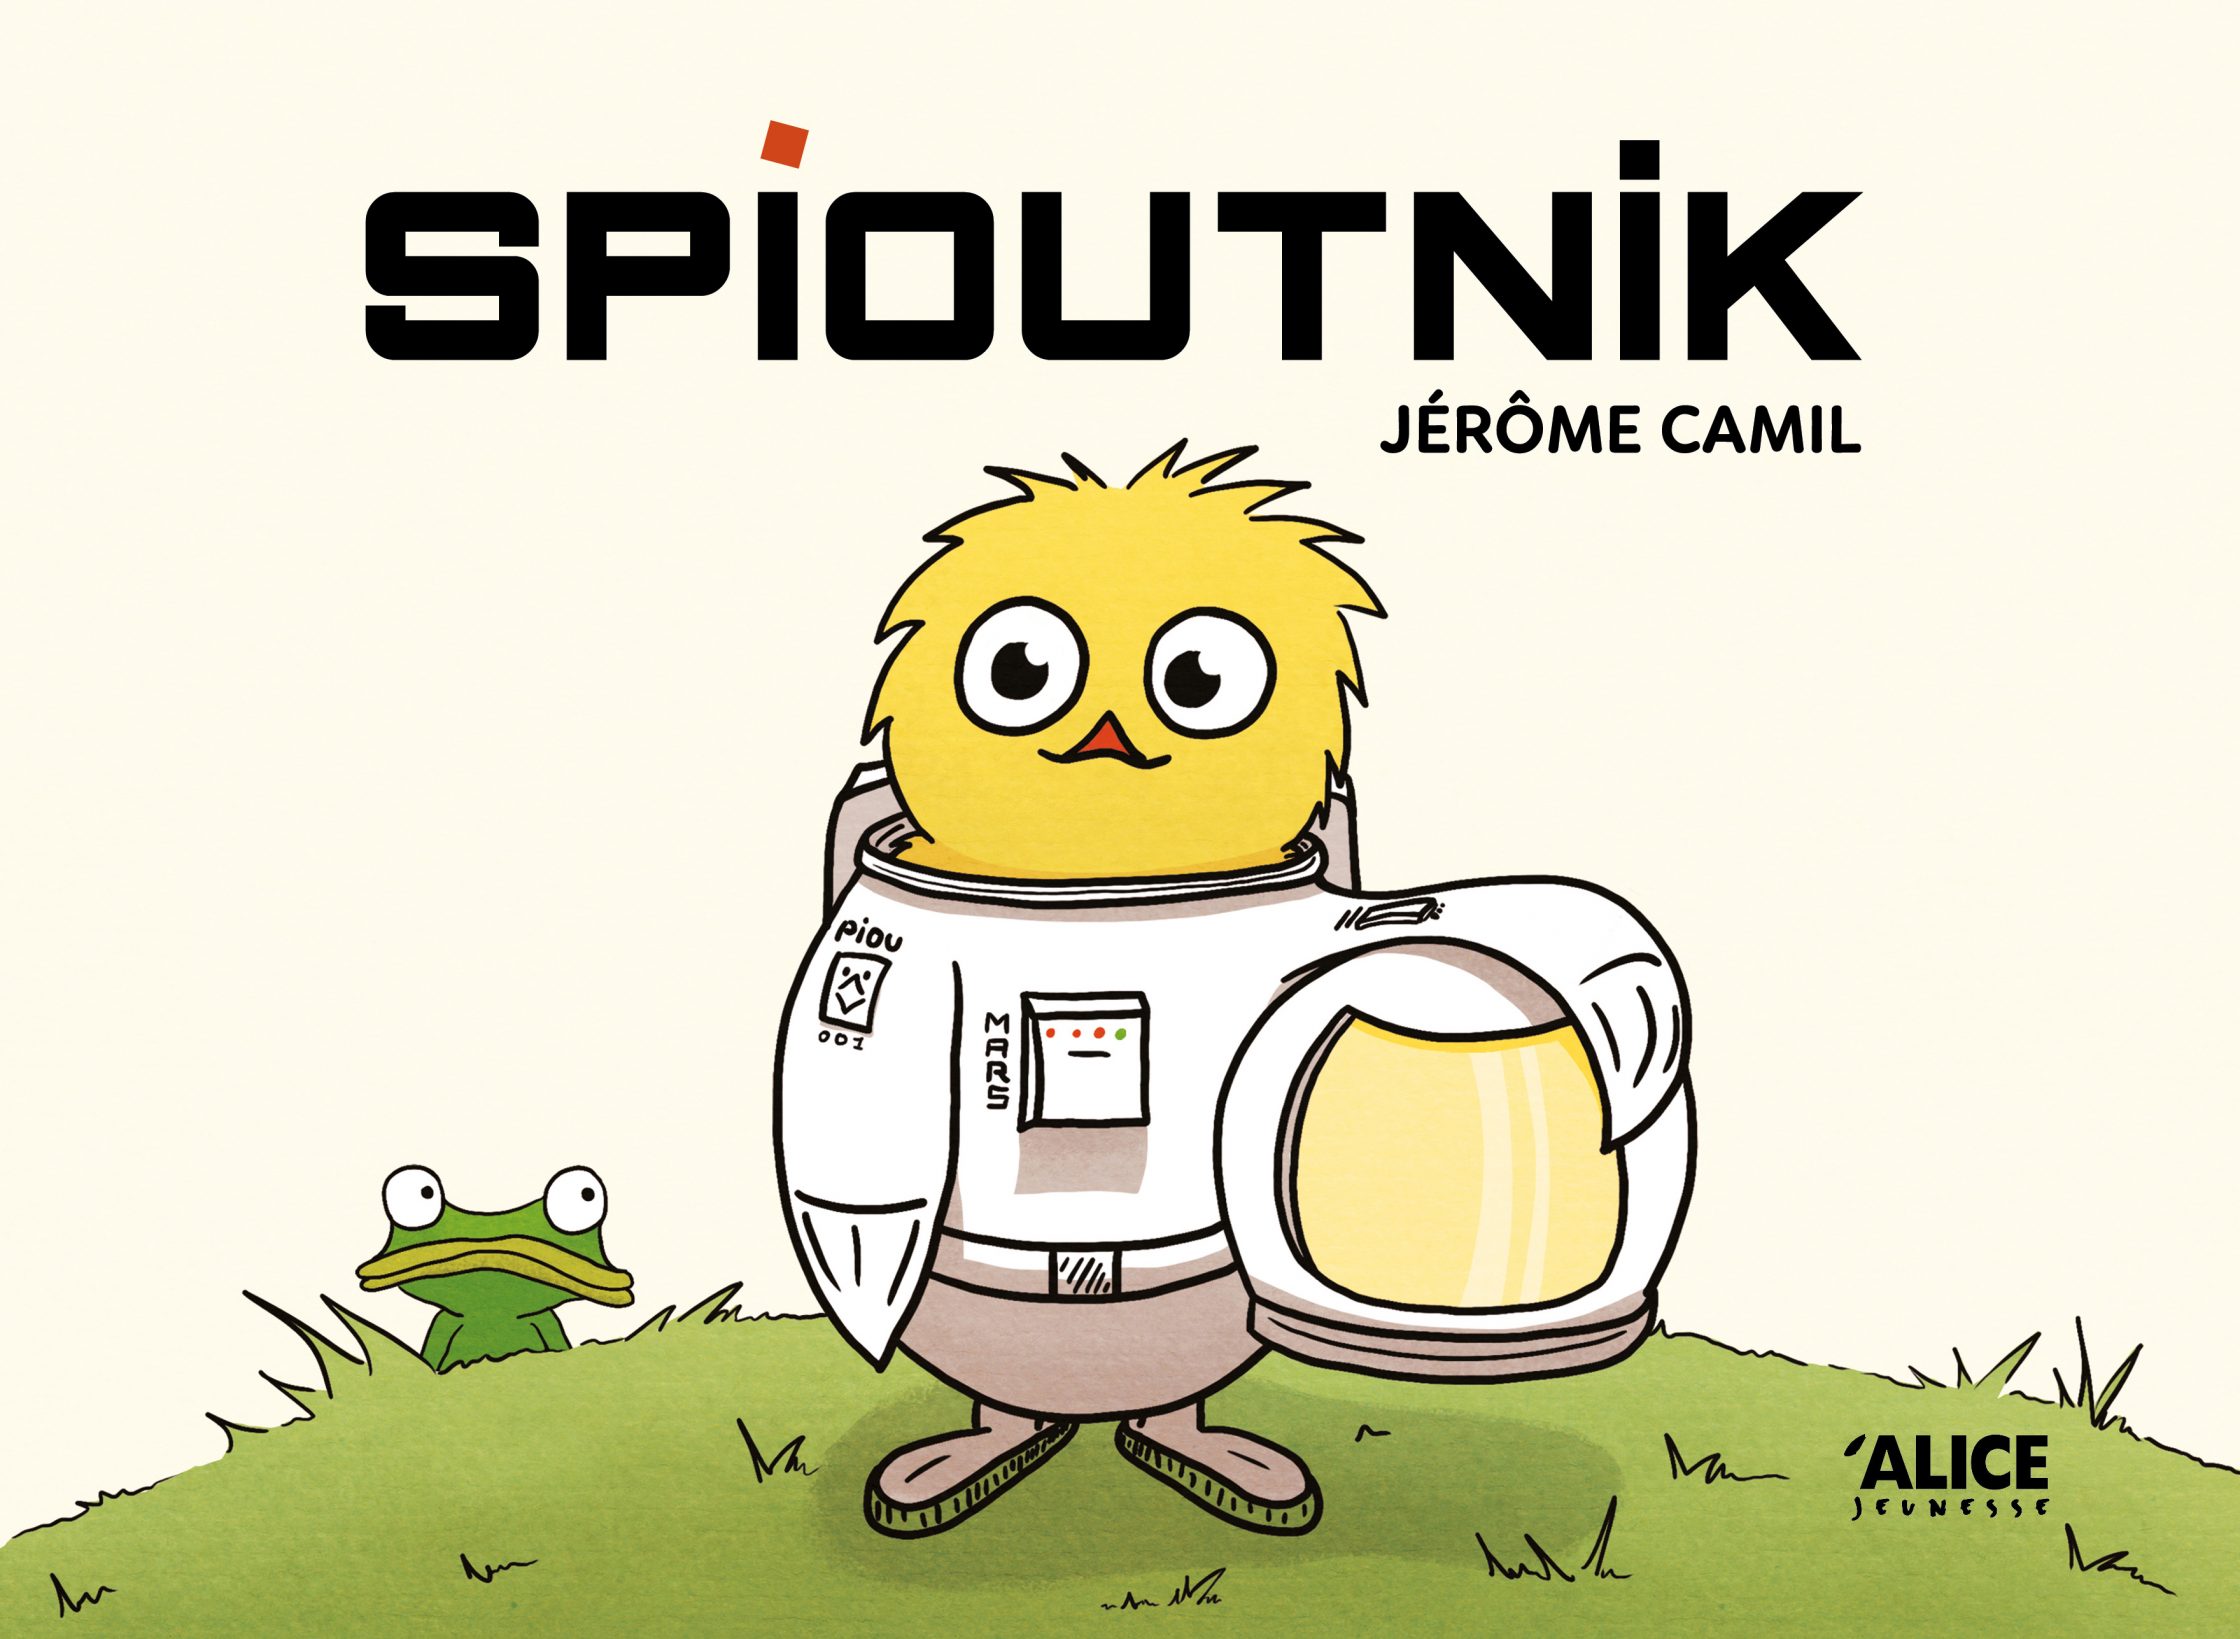 Spioutnik / Spudchick